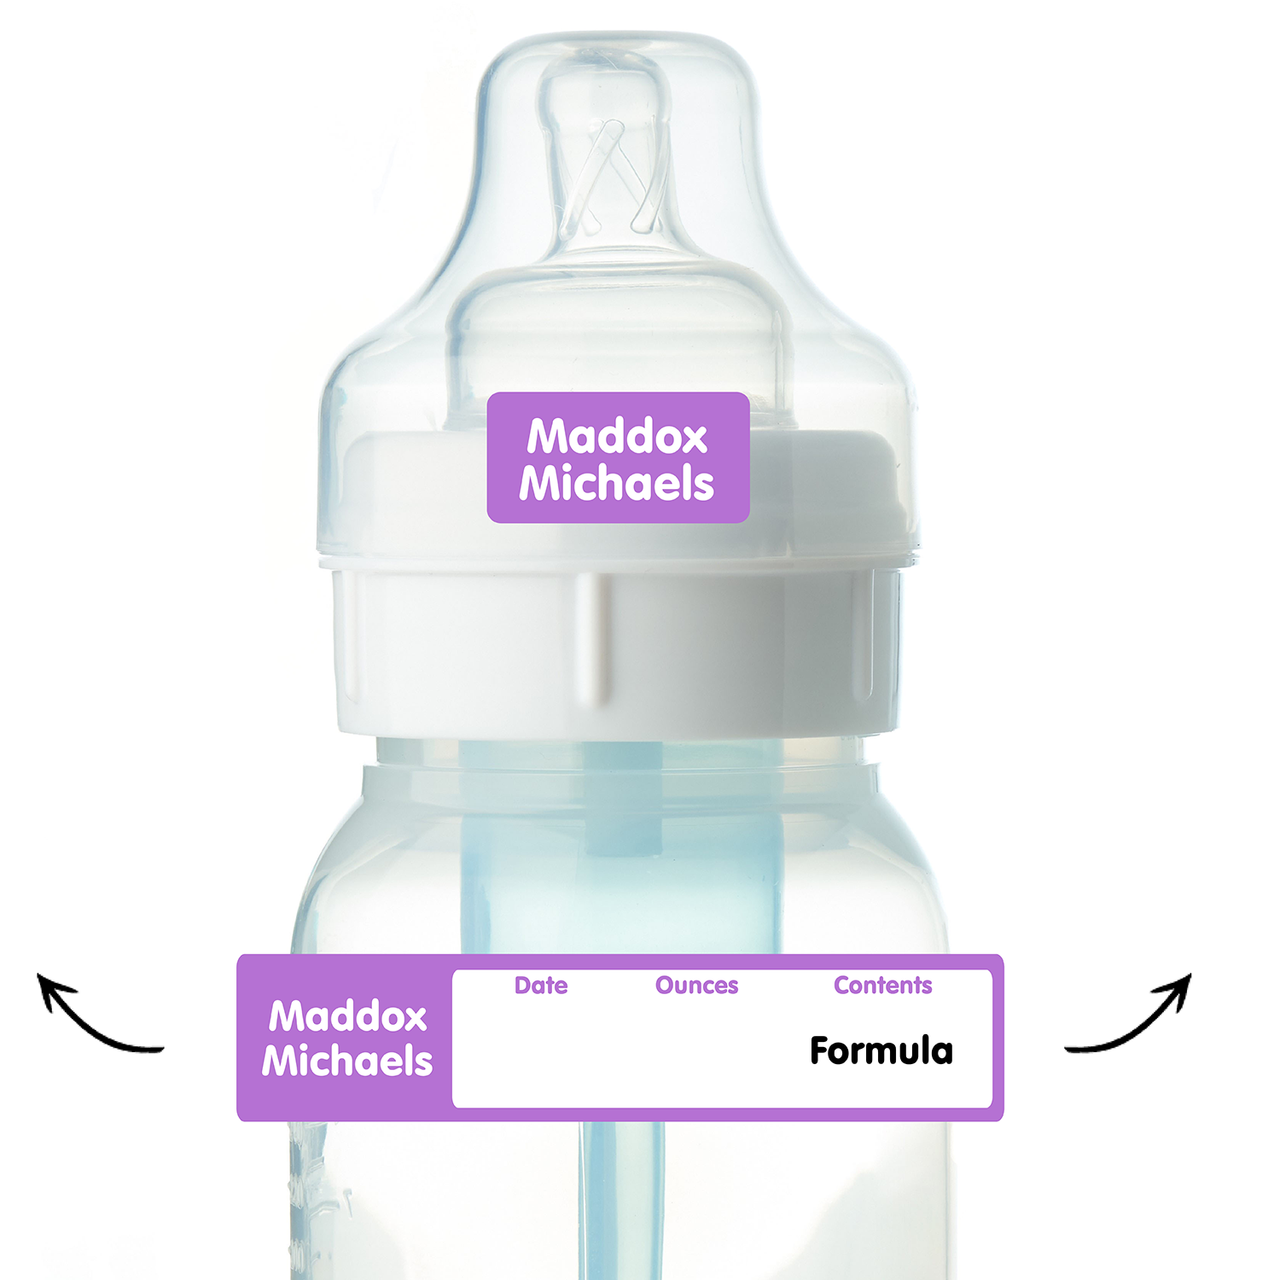 Waterproof Baby Bottle Labels